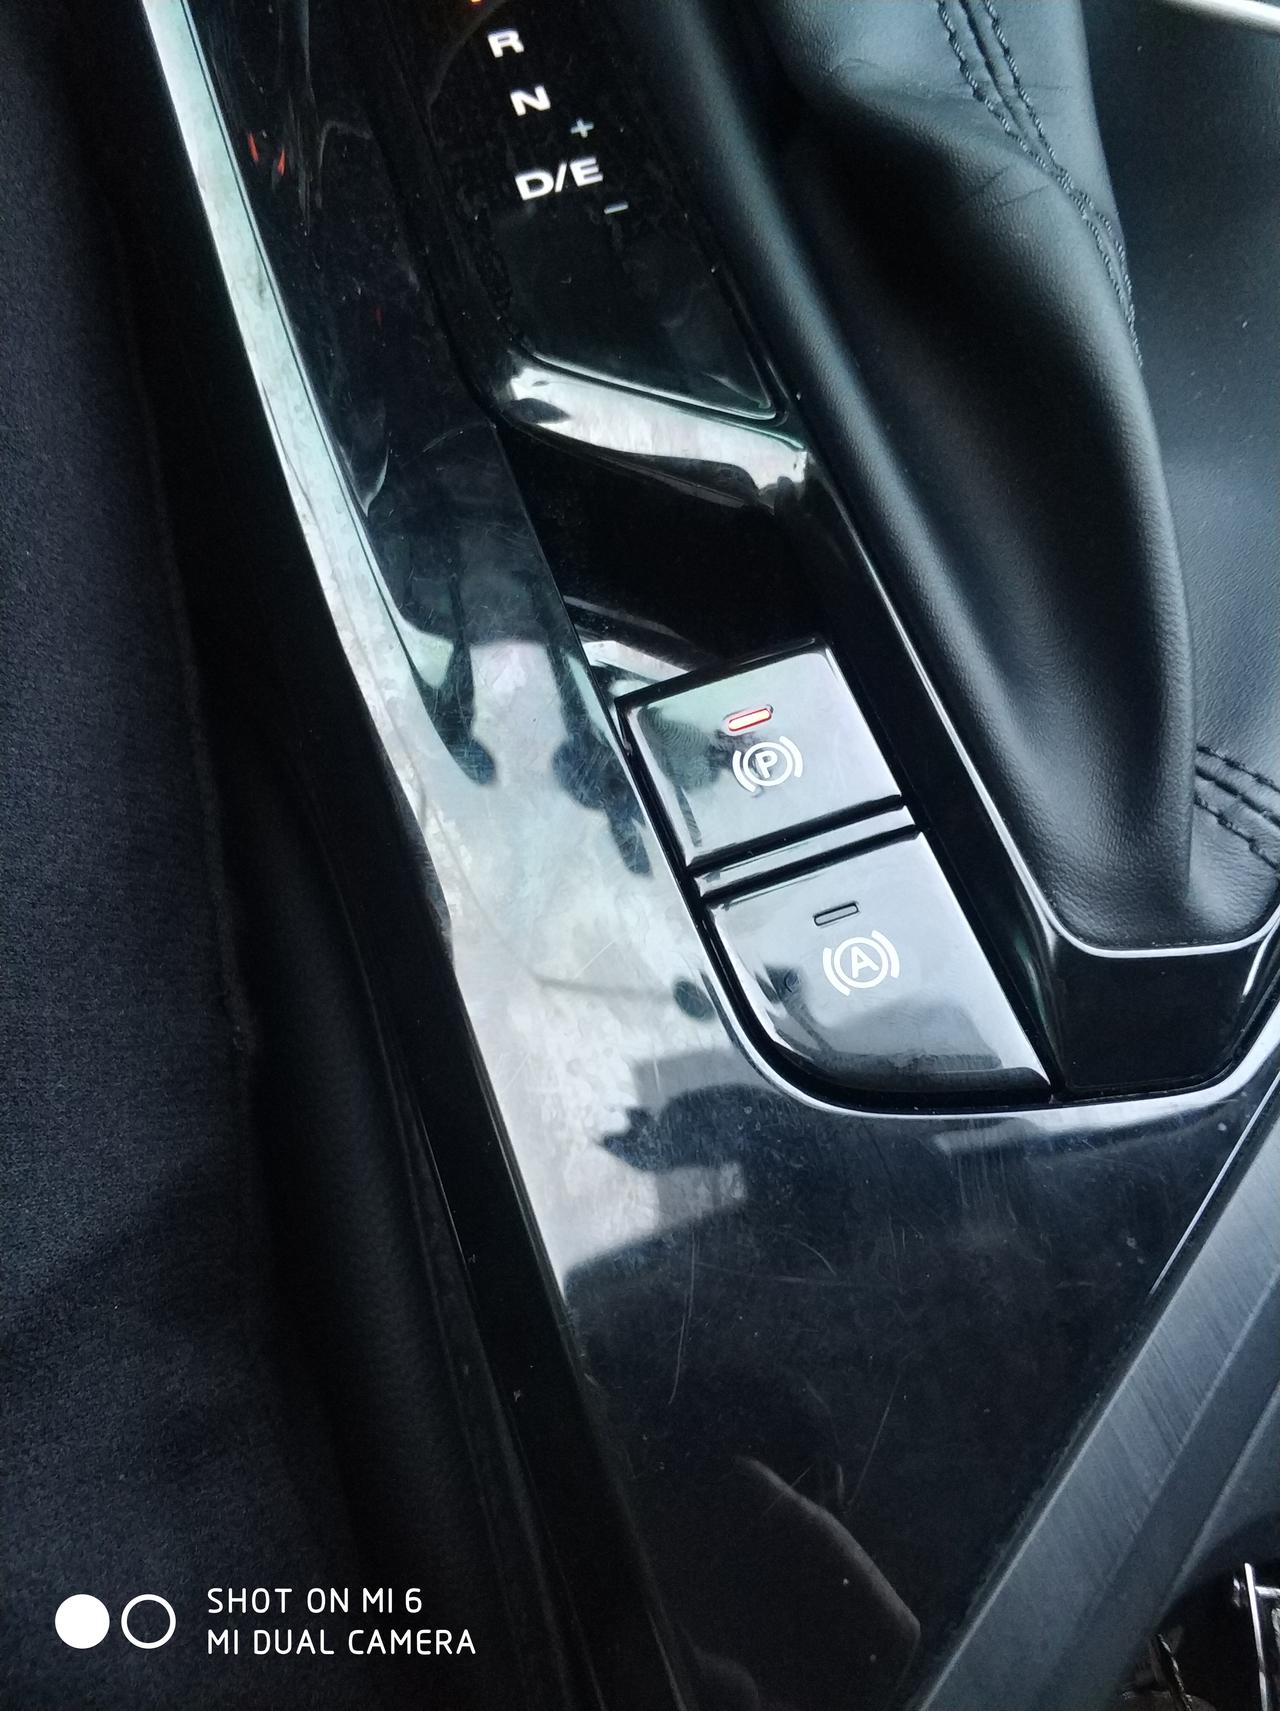 荣威i5的自动驻车如果手动开启会不会费油?如果关闭后在半坡停车会不会自动开启?